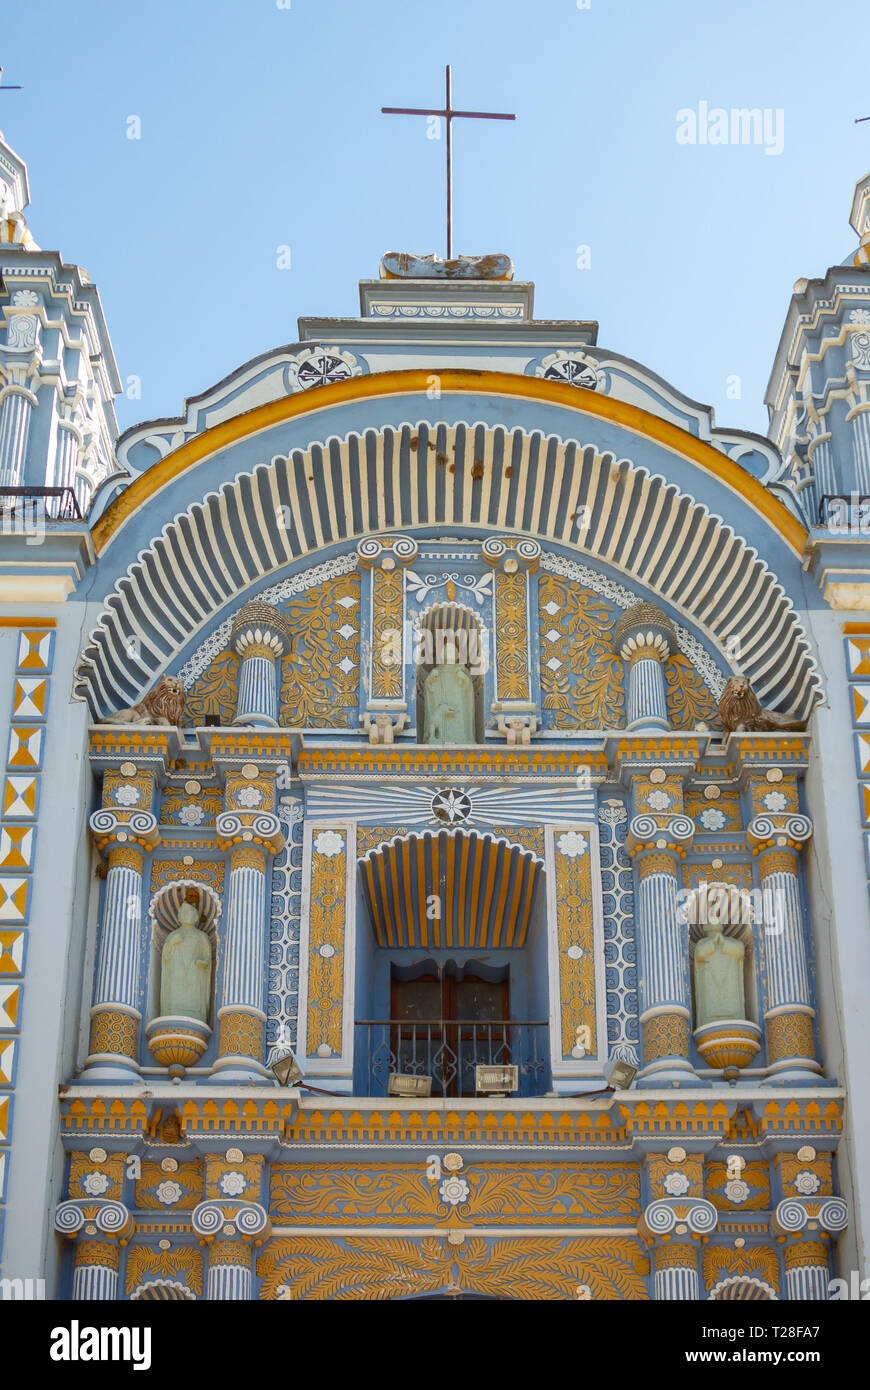 A facade of the Temple of Santo Domingo de Guzmán, Ocotlan de Morelos, Oaxaca, Mexico Stock Photo